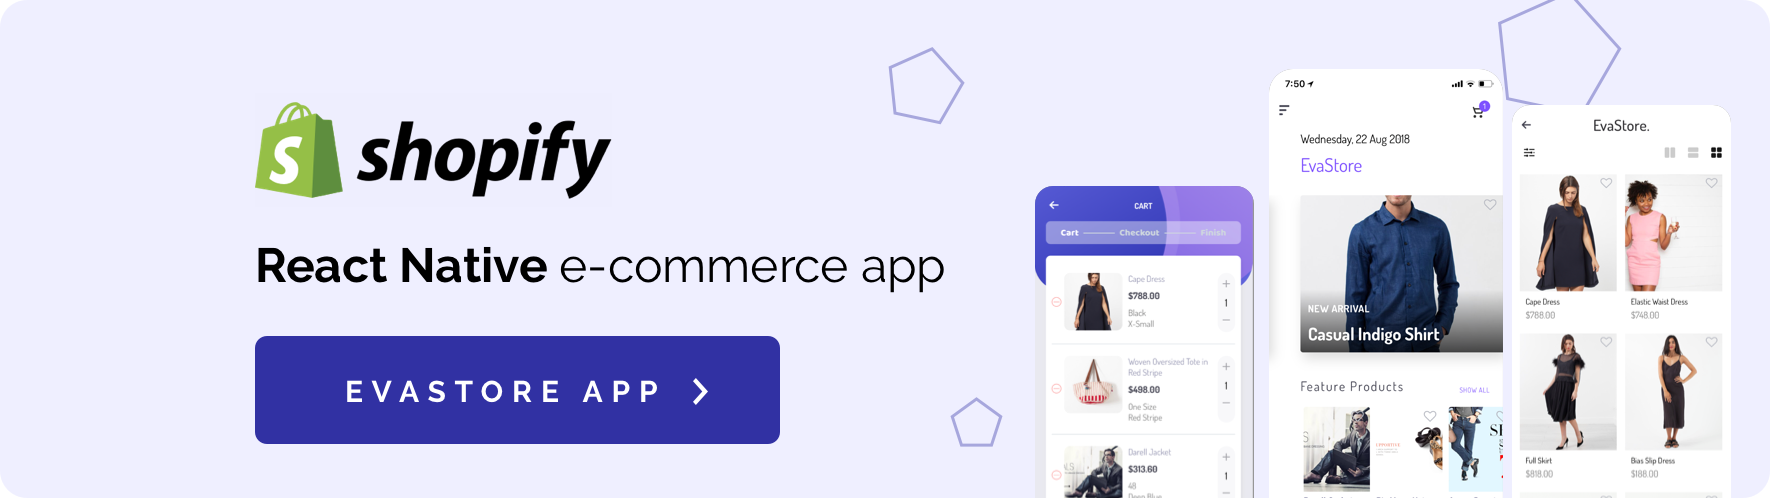 Fluxstore Pro - Flutter E-commerce Full App - 38